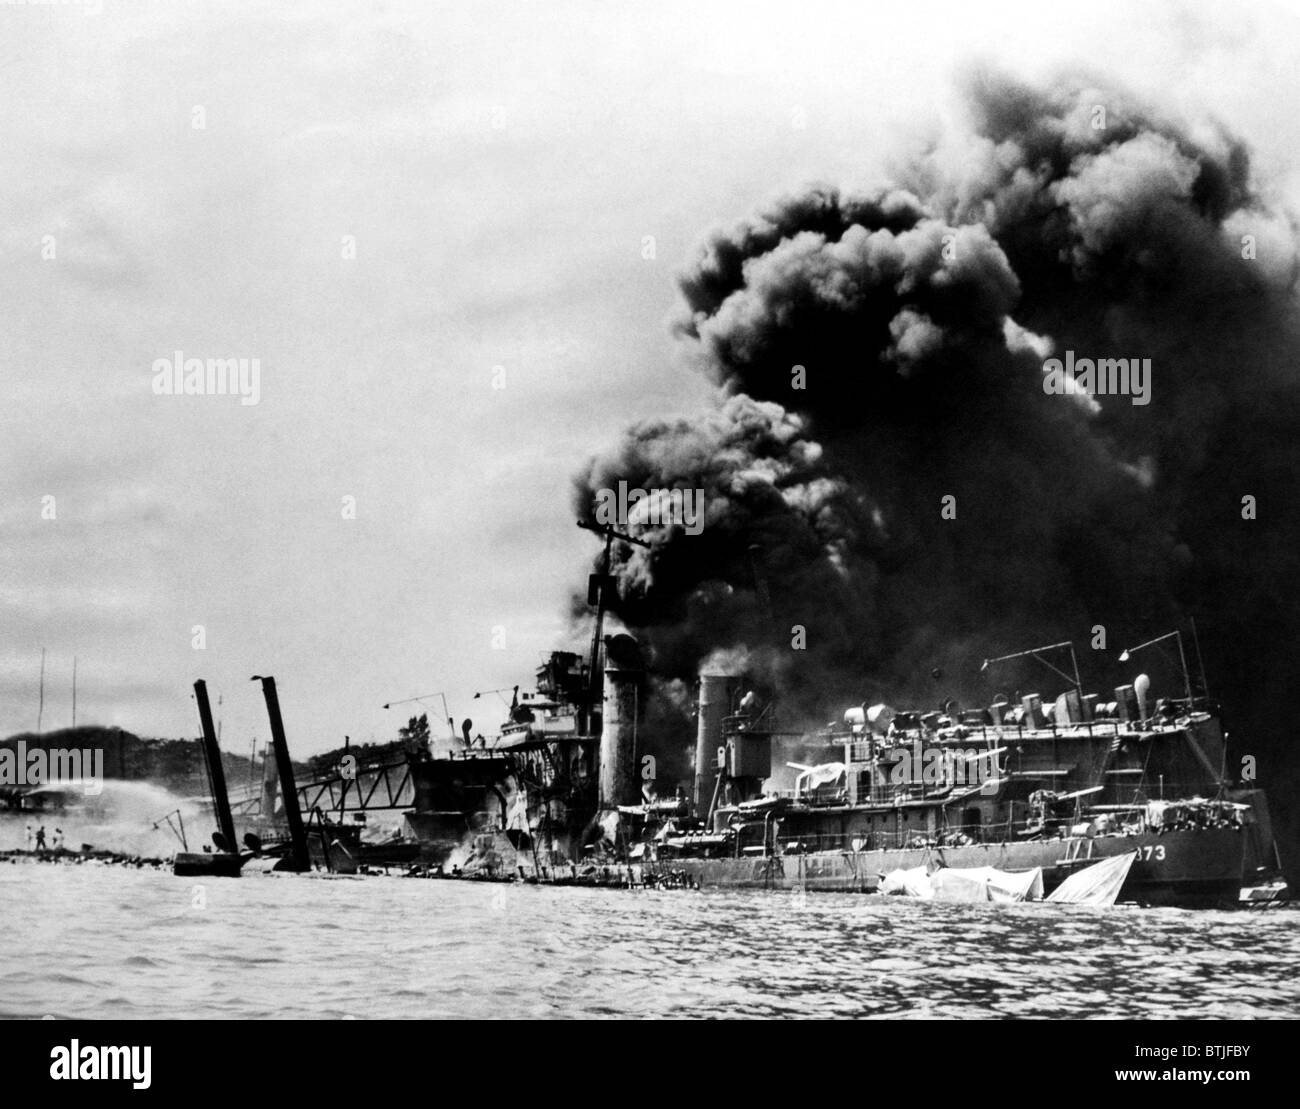 Die USS Shaw Brand nach einem direkten Treffer durch einen japanischen Bomber, Pearl Harbor, 7. Dezember 1941. CSU-Archiv/Courtesy Everett Colle Stockfoto